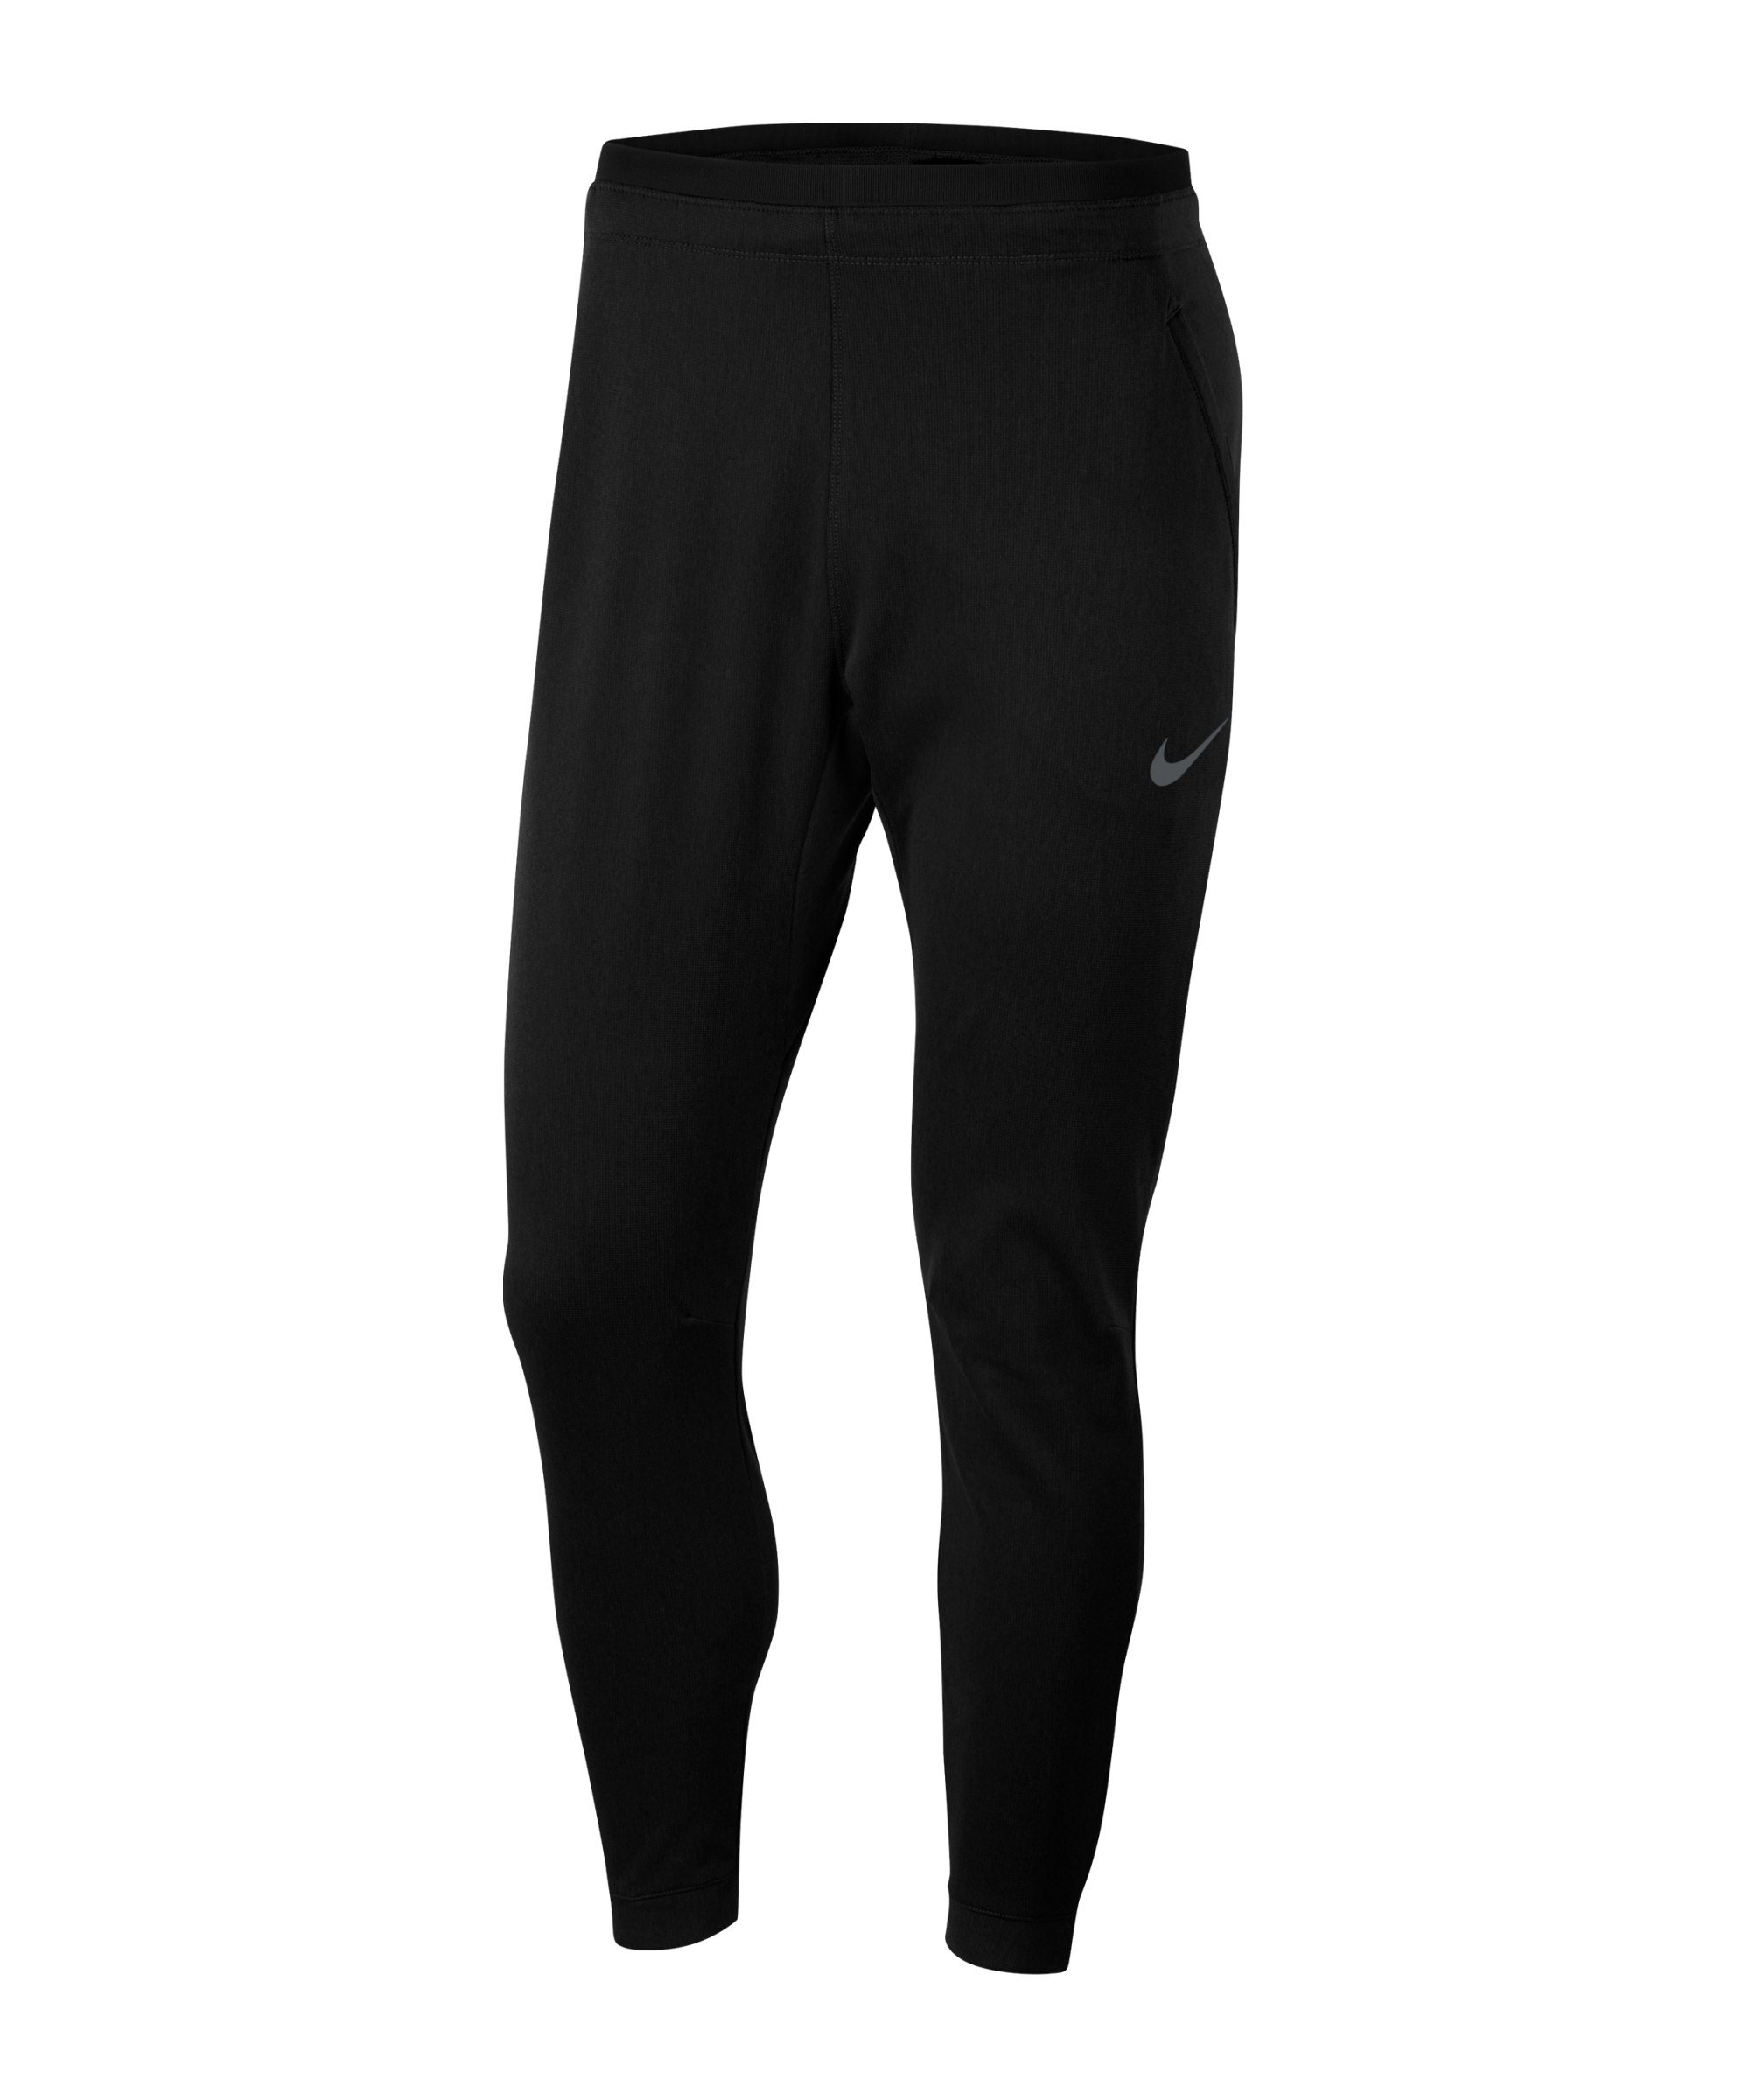 Nike Pro Capra Trainingshose Schwarz Grau F010 - schwarz